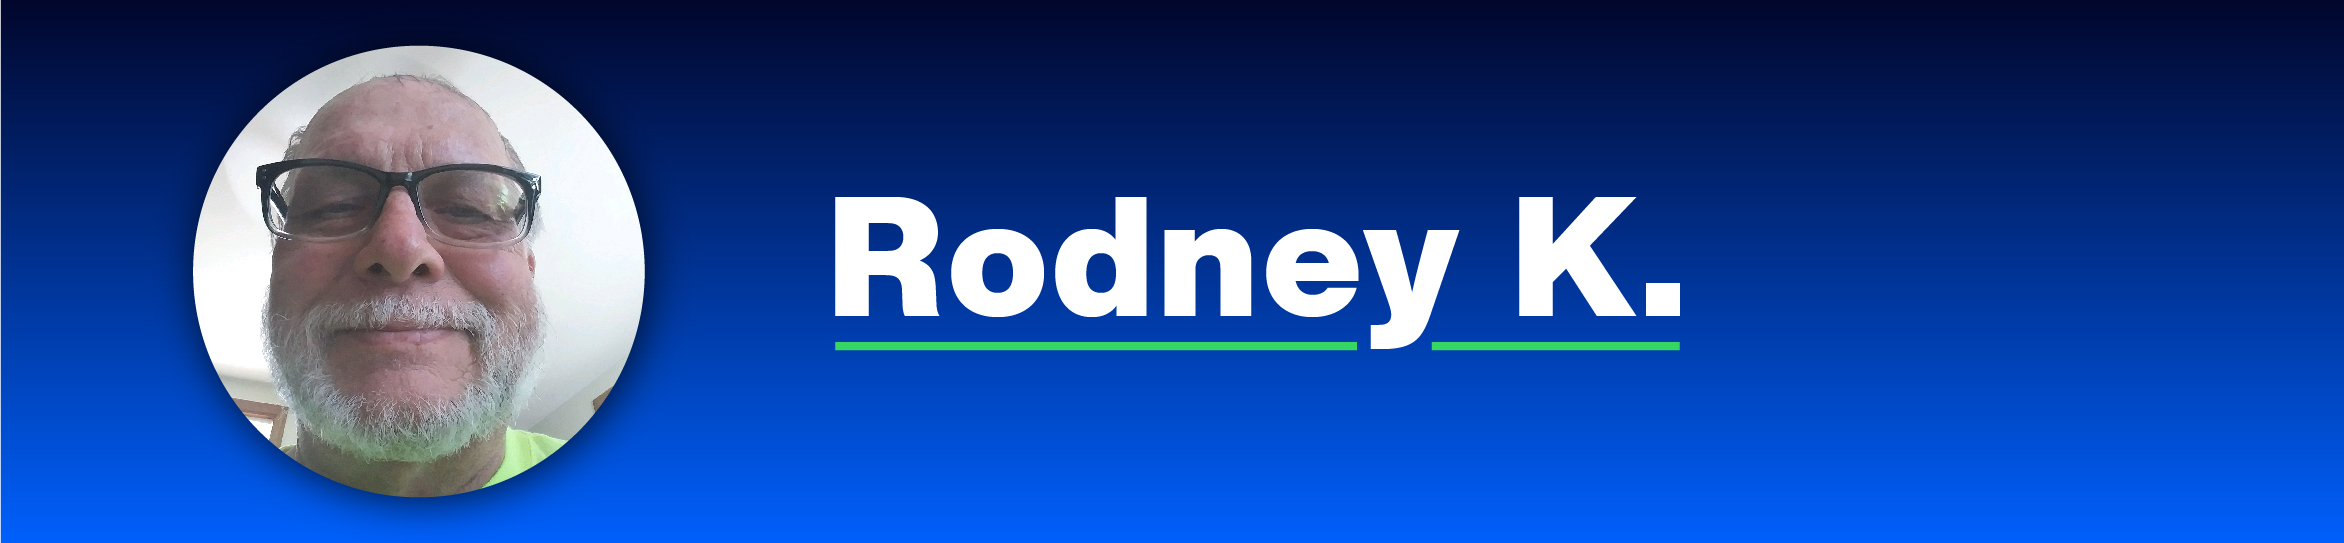 Rodney_K_Member_Story-01.jpg